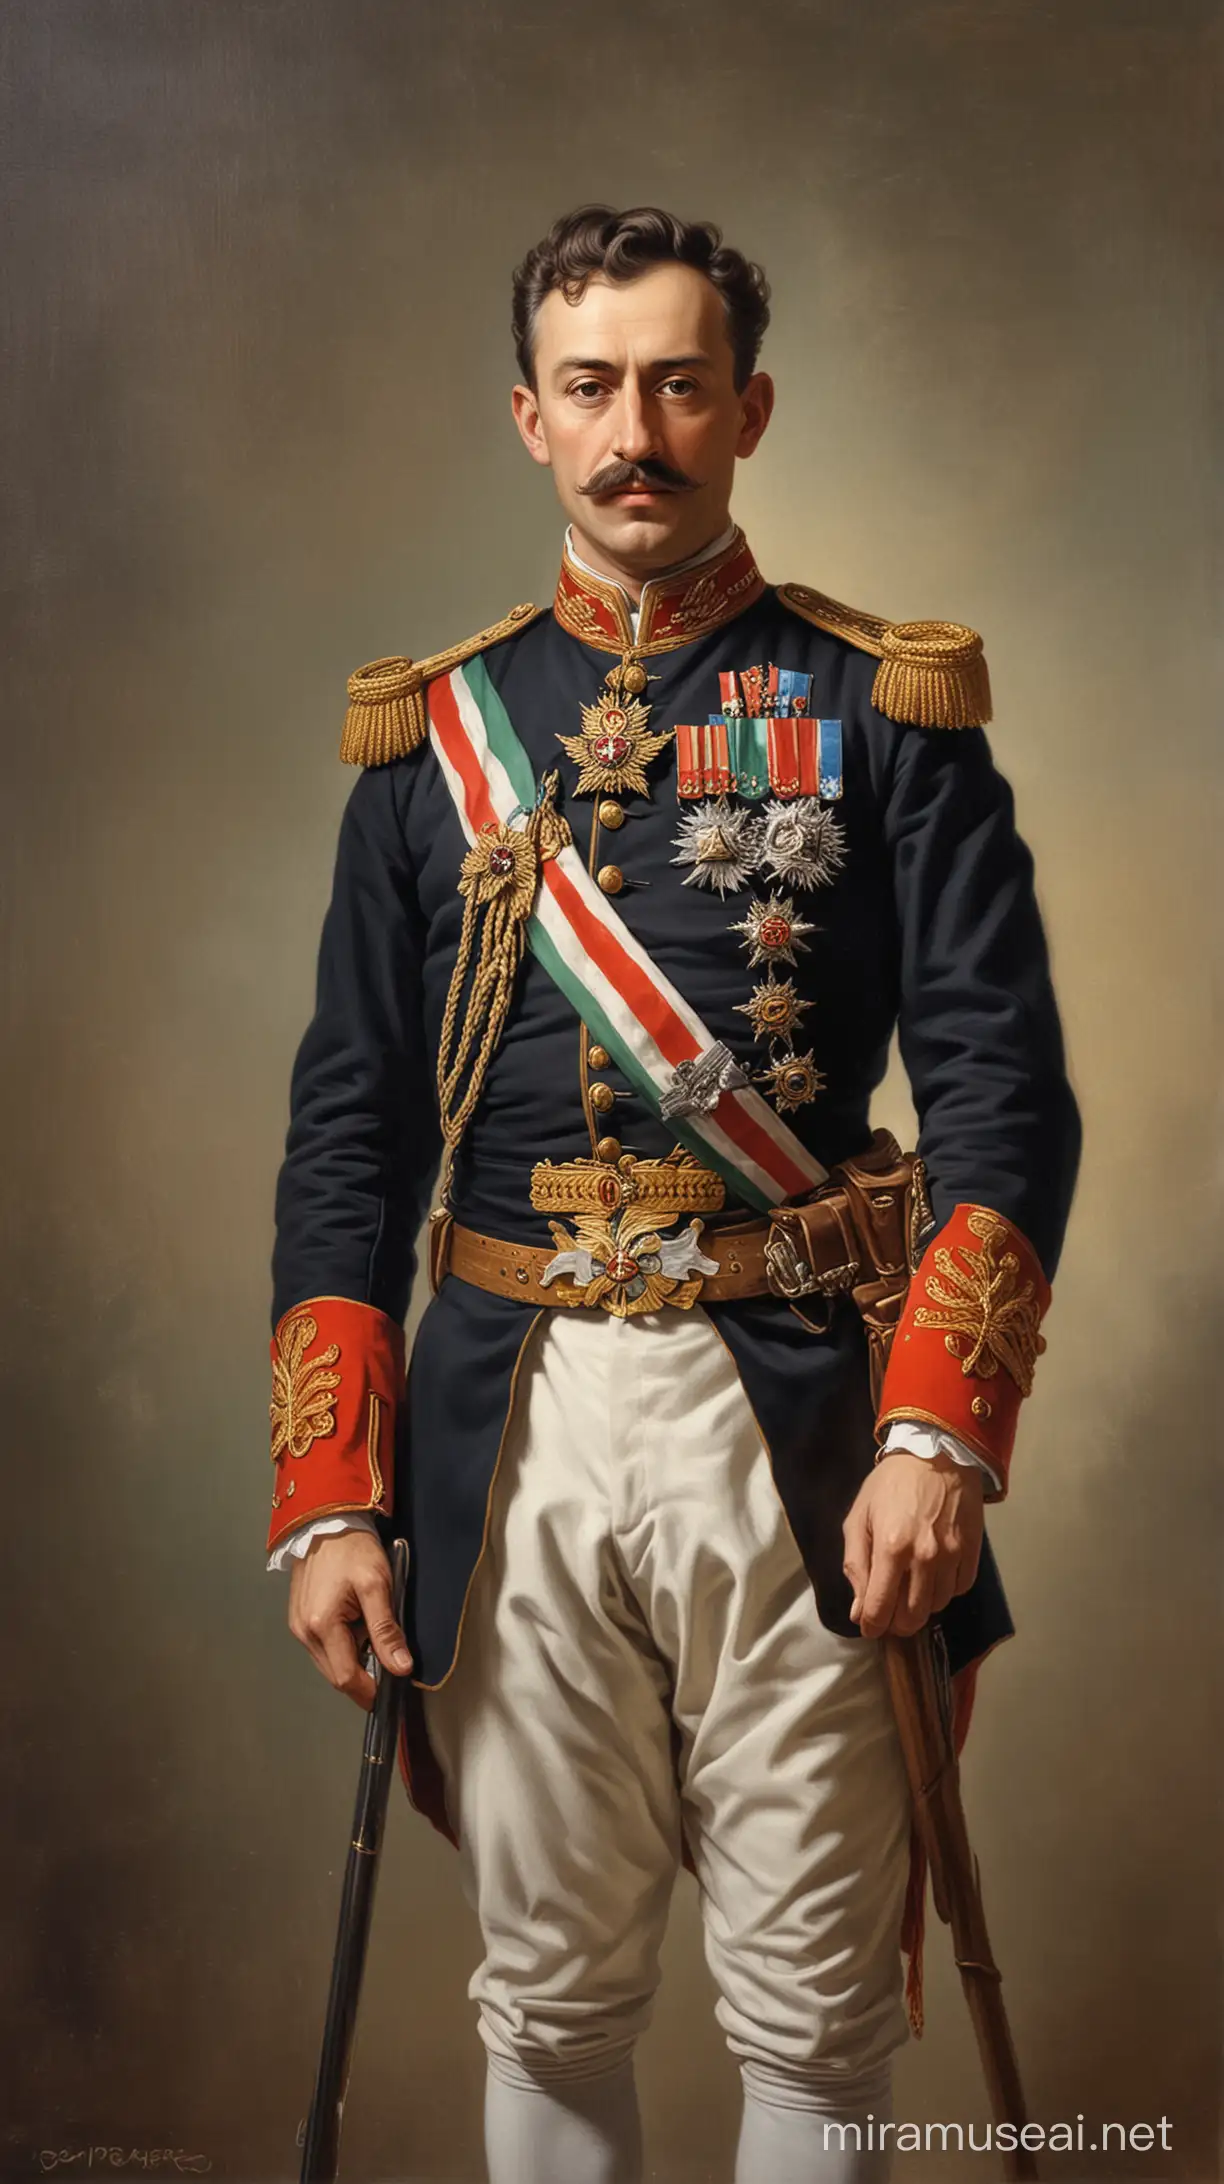 Crie uma pintura de Francisco Ferdinando da Austria Hungria